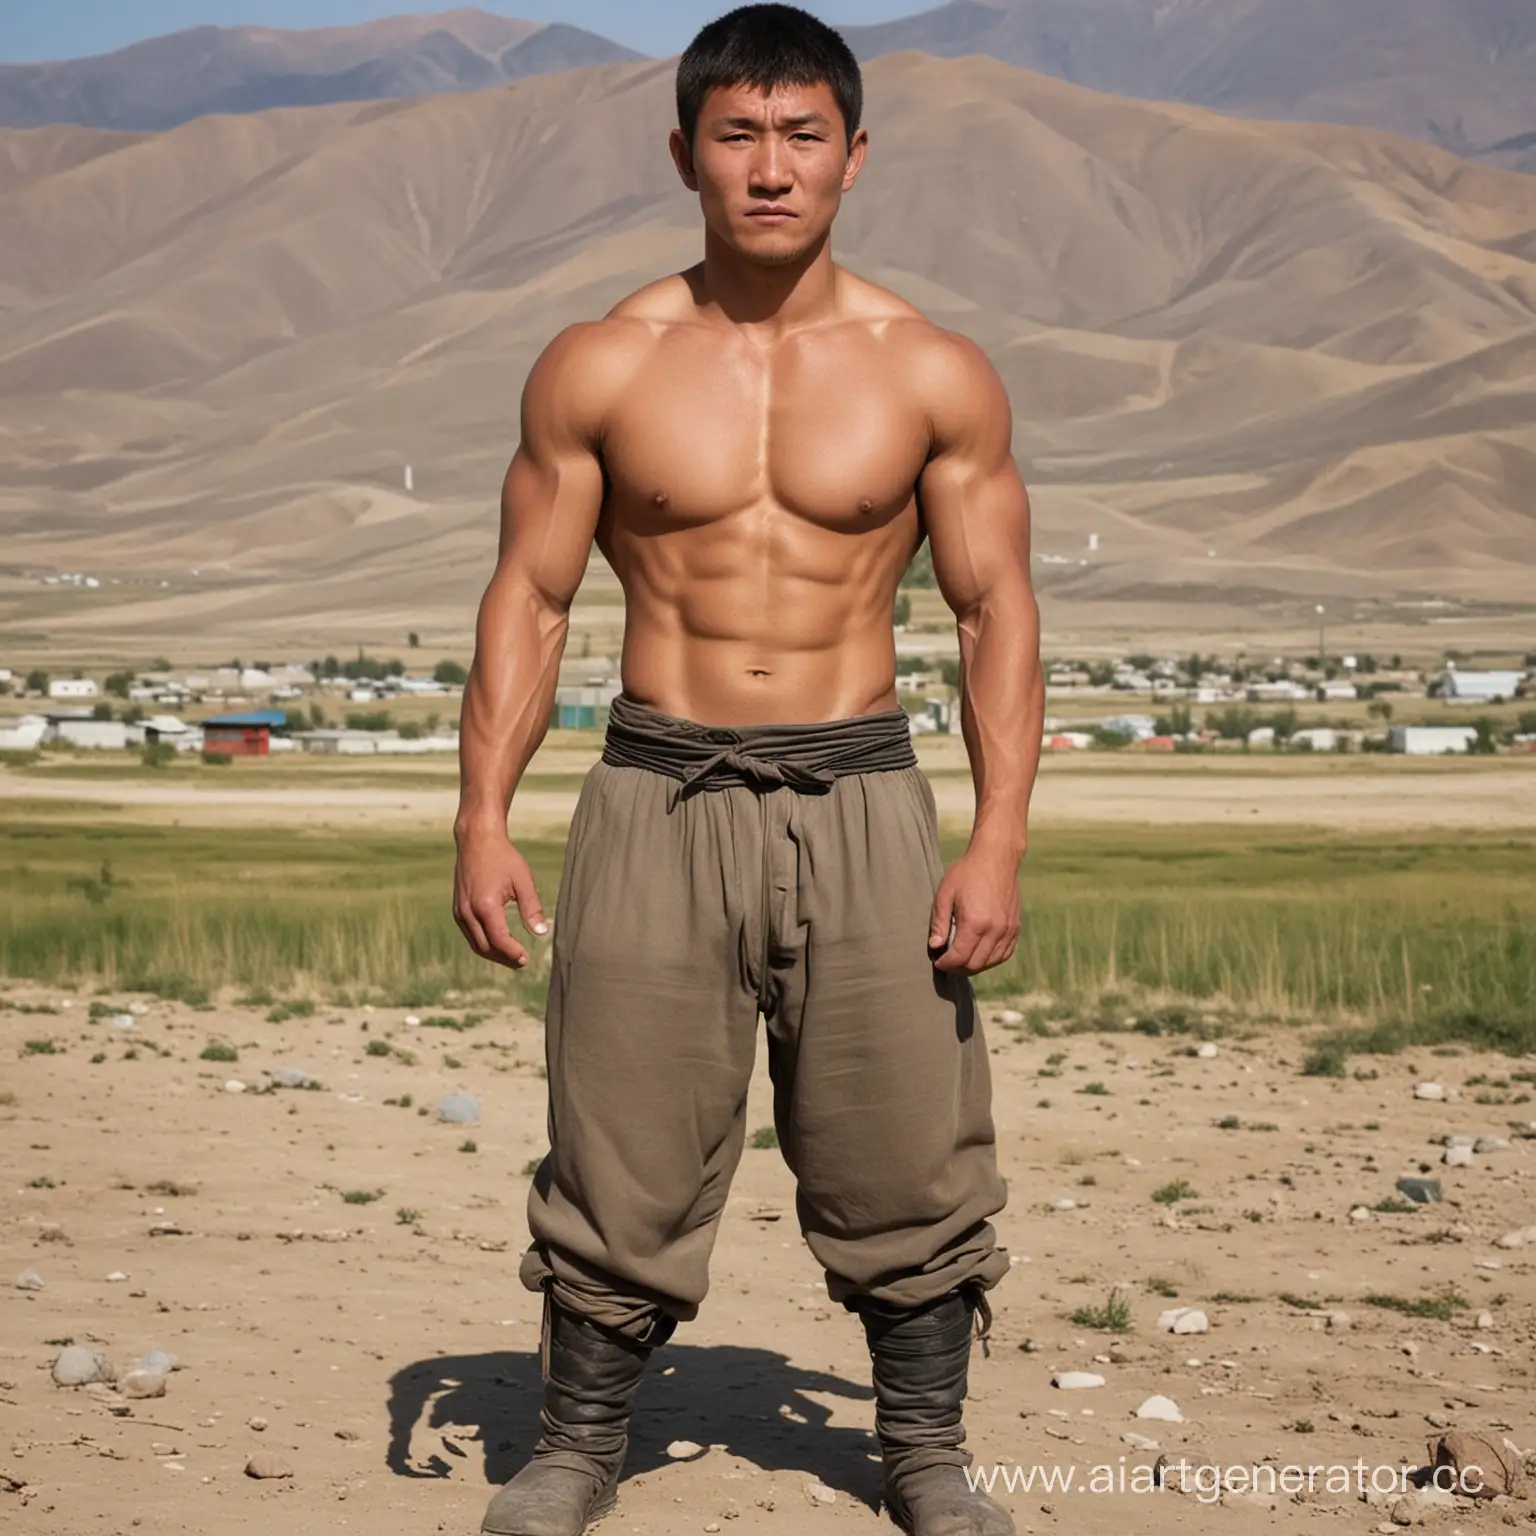 парень Кыргыз из региона 23 года мырк мамбет 
во весь рост 
характер драчун, худой, быдло